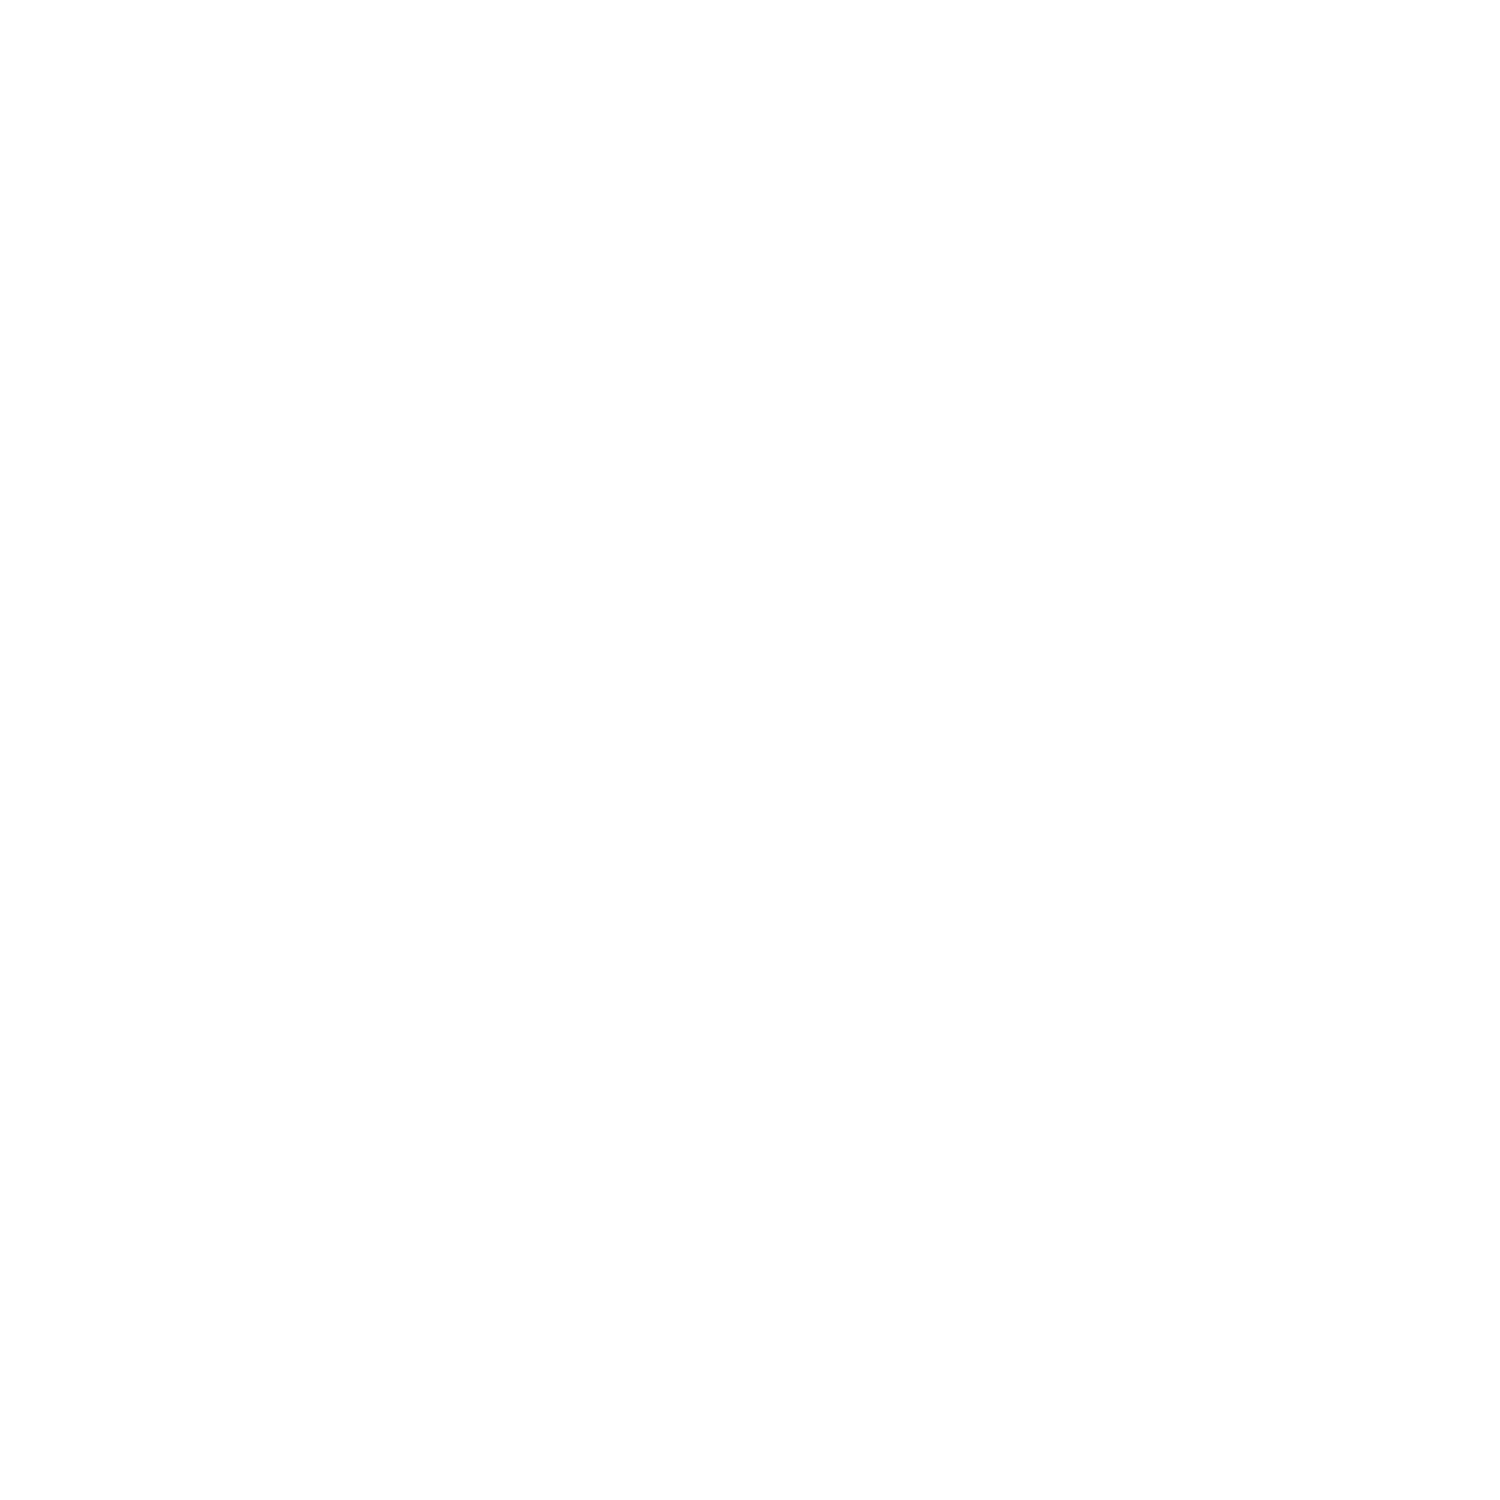 Mason Sandwich Co. | Eastchester Craft Sandwiches, Salads & Soups